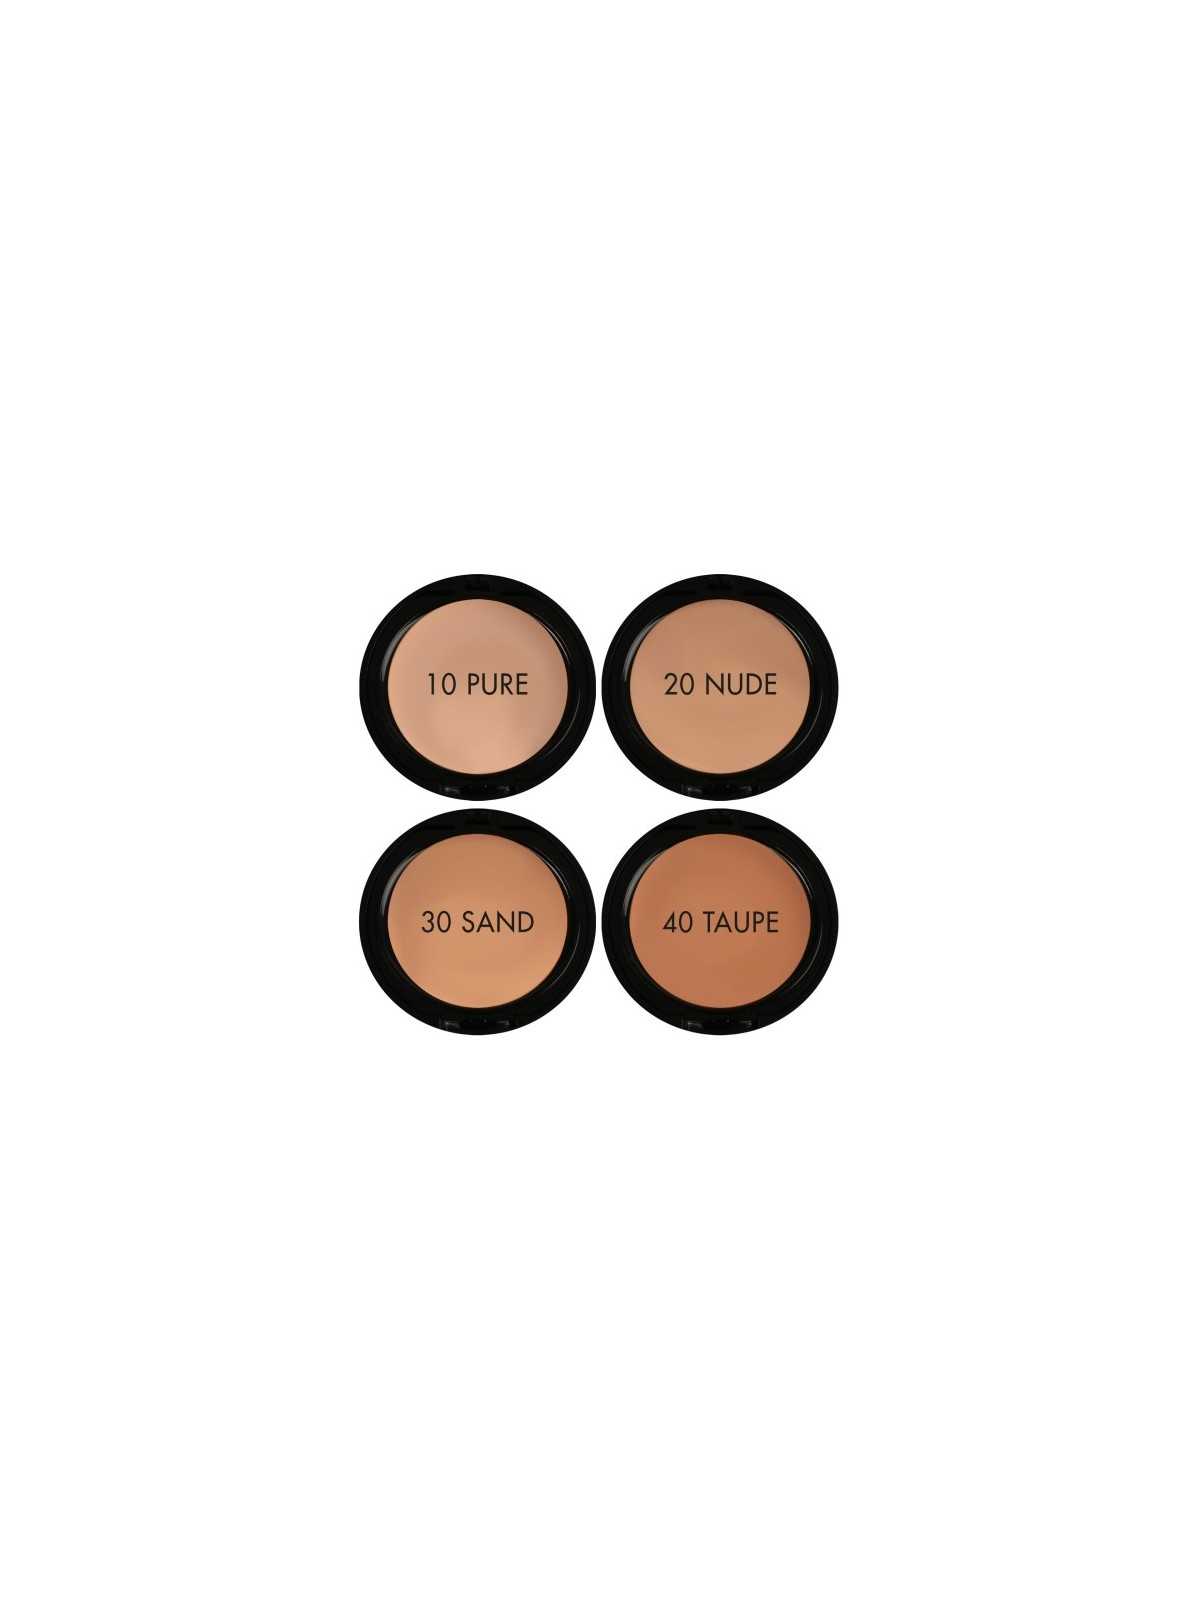 Comprar Base de maquillaje Perfect Compact Foundation 50+ (40 TAUPE) en Maquillaje por sólo 10,95 € o un precio específico de 10,95 € en Thalie Care